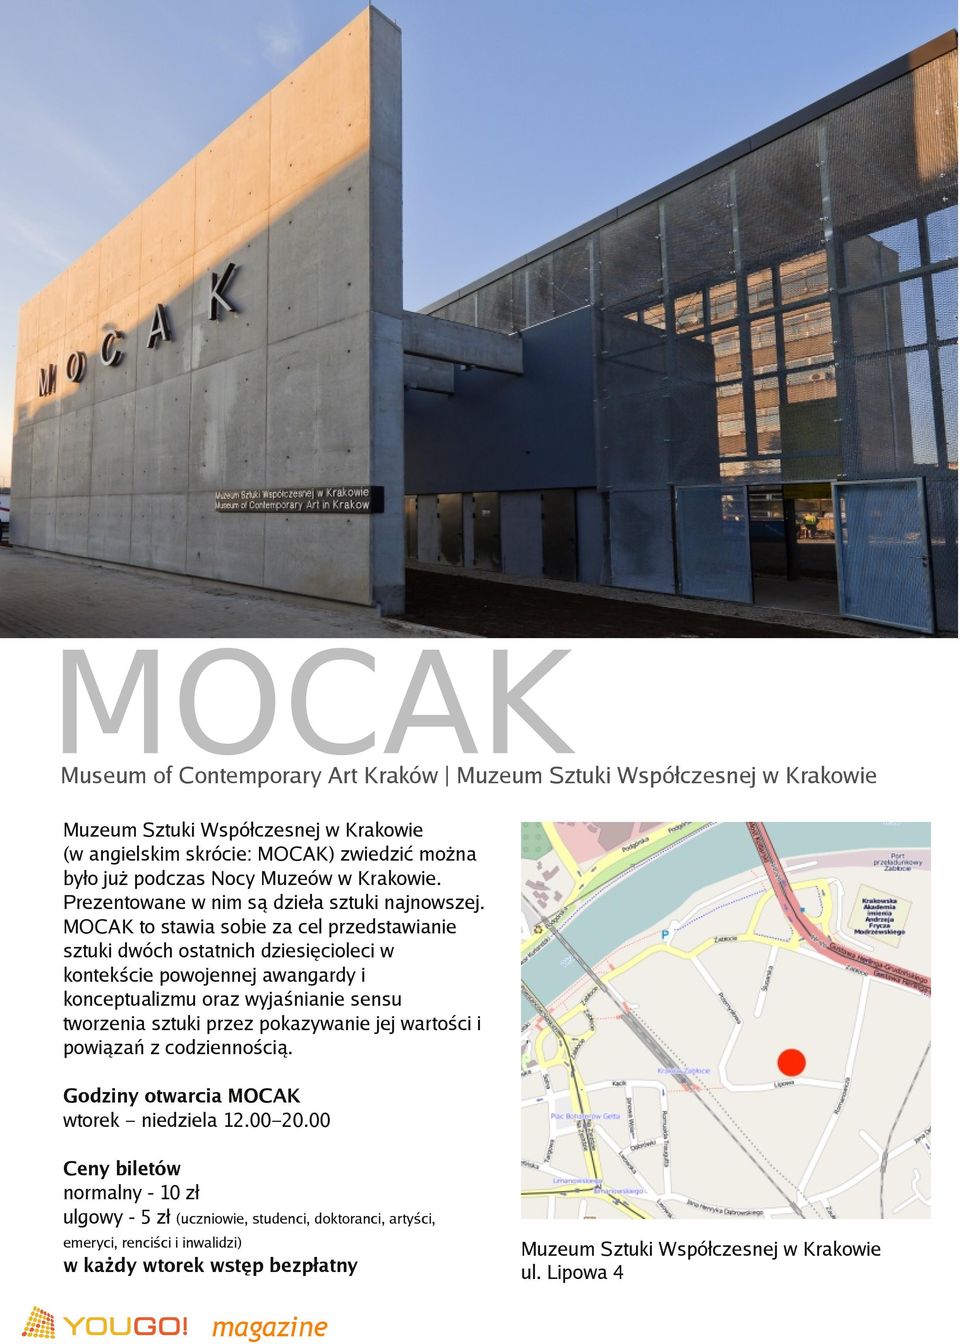 MOCAK to stawia sobie za cel przedstawianie sztuki dwóch ostatnich dziesięcioleci w kontekście powojennej awangardy i konceptualizmu oraz wyjaśnianie sensu tworzenia sztuki przez